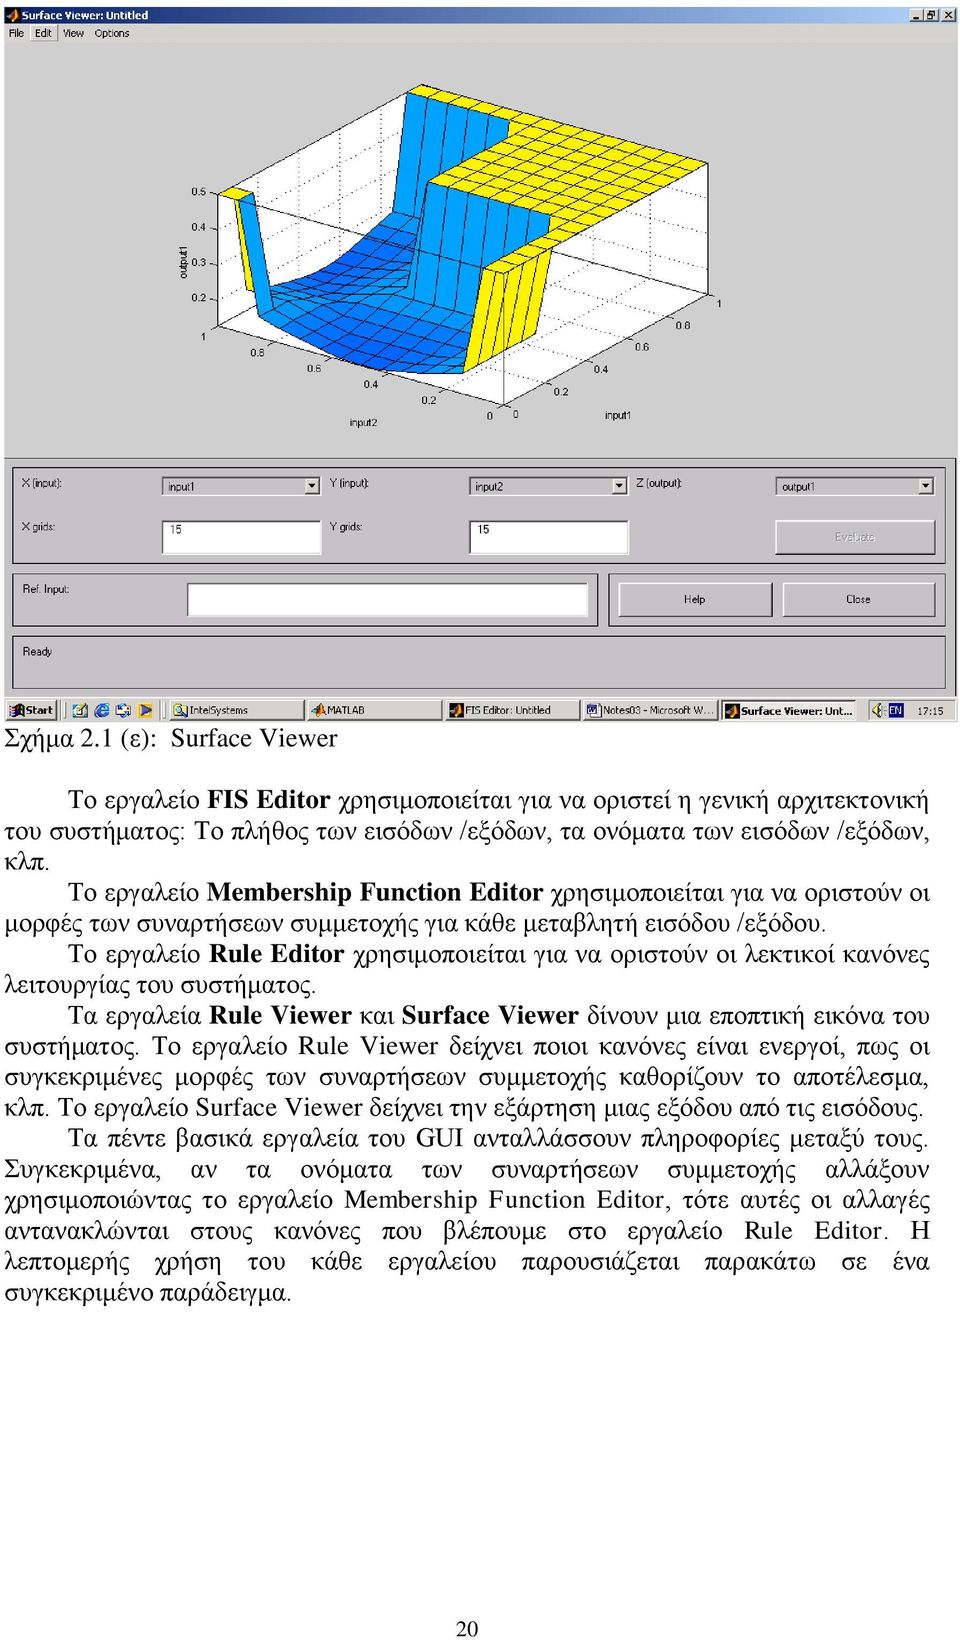 Το εργαλείο Rule Editor χρησιμοποιείται για να οριστούν οι λεκτικοί κανόνες λειτουργίας του συστήματος. Τα εργαλεία Rule Viewer και Surface Viewer δίνουν μια εποπτική εικόνα του συστήματος.